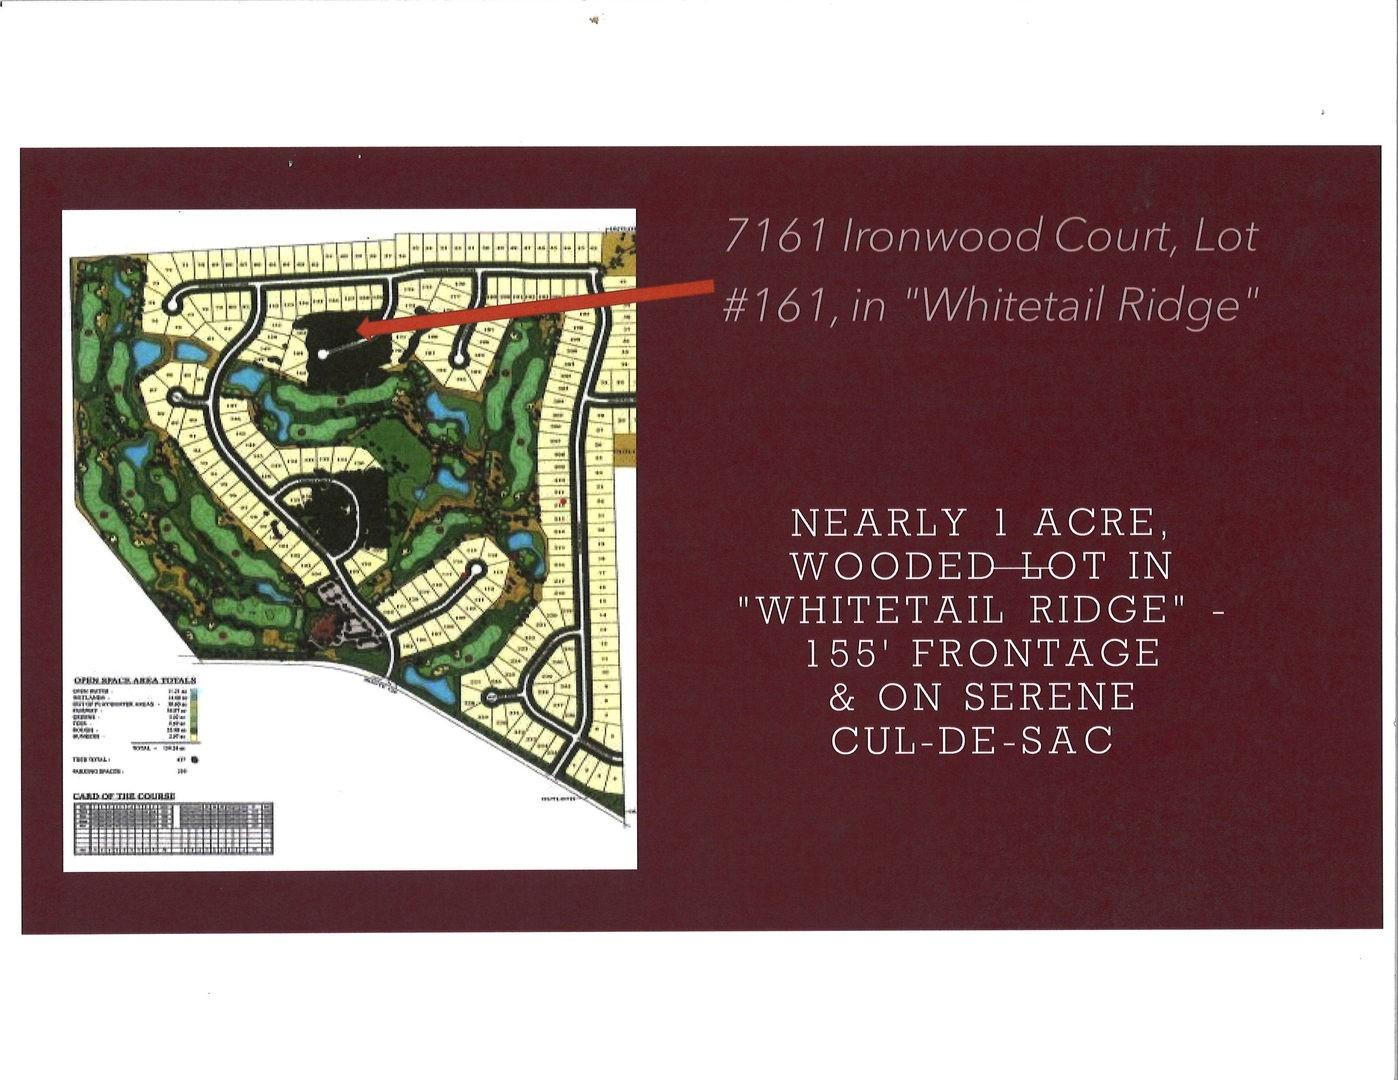 Property Image for Lot 161 Ironwood Court